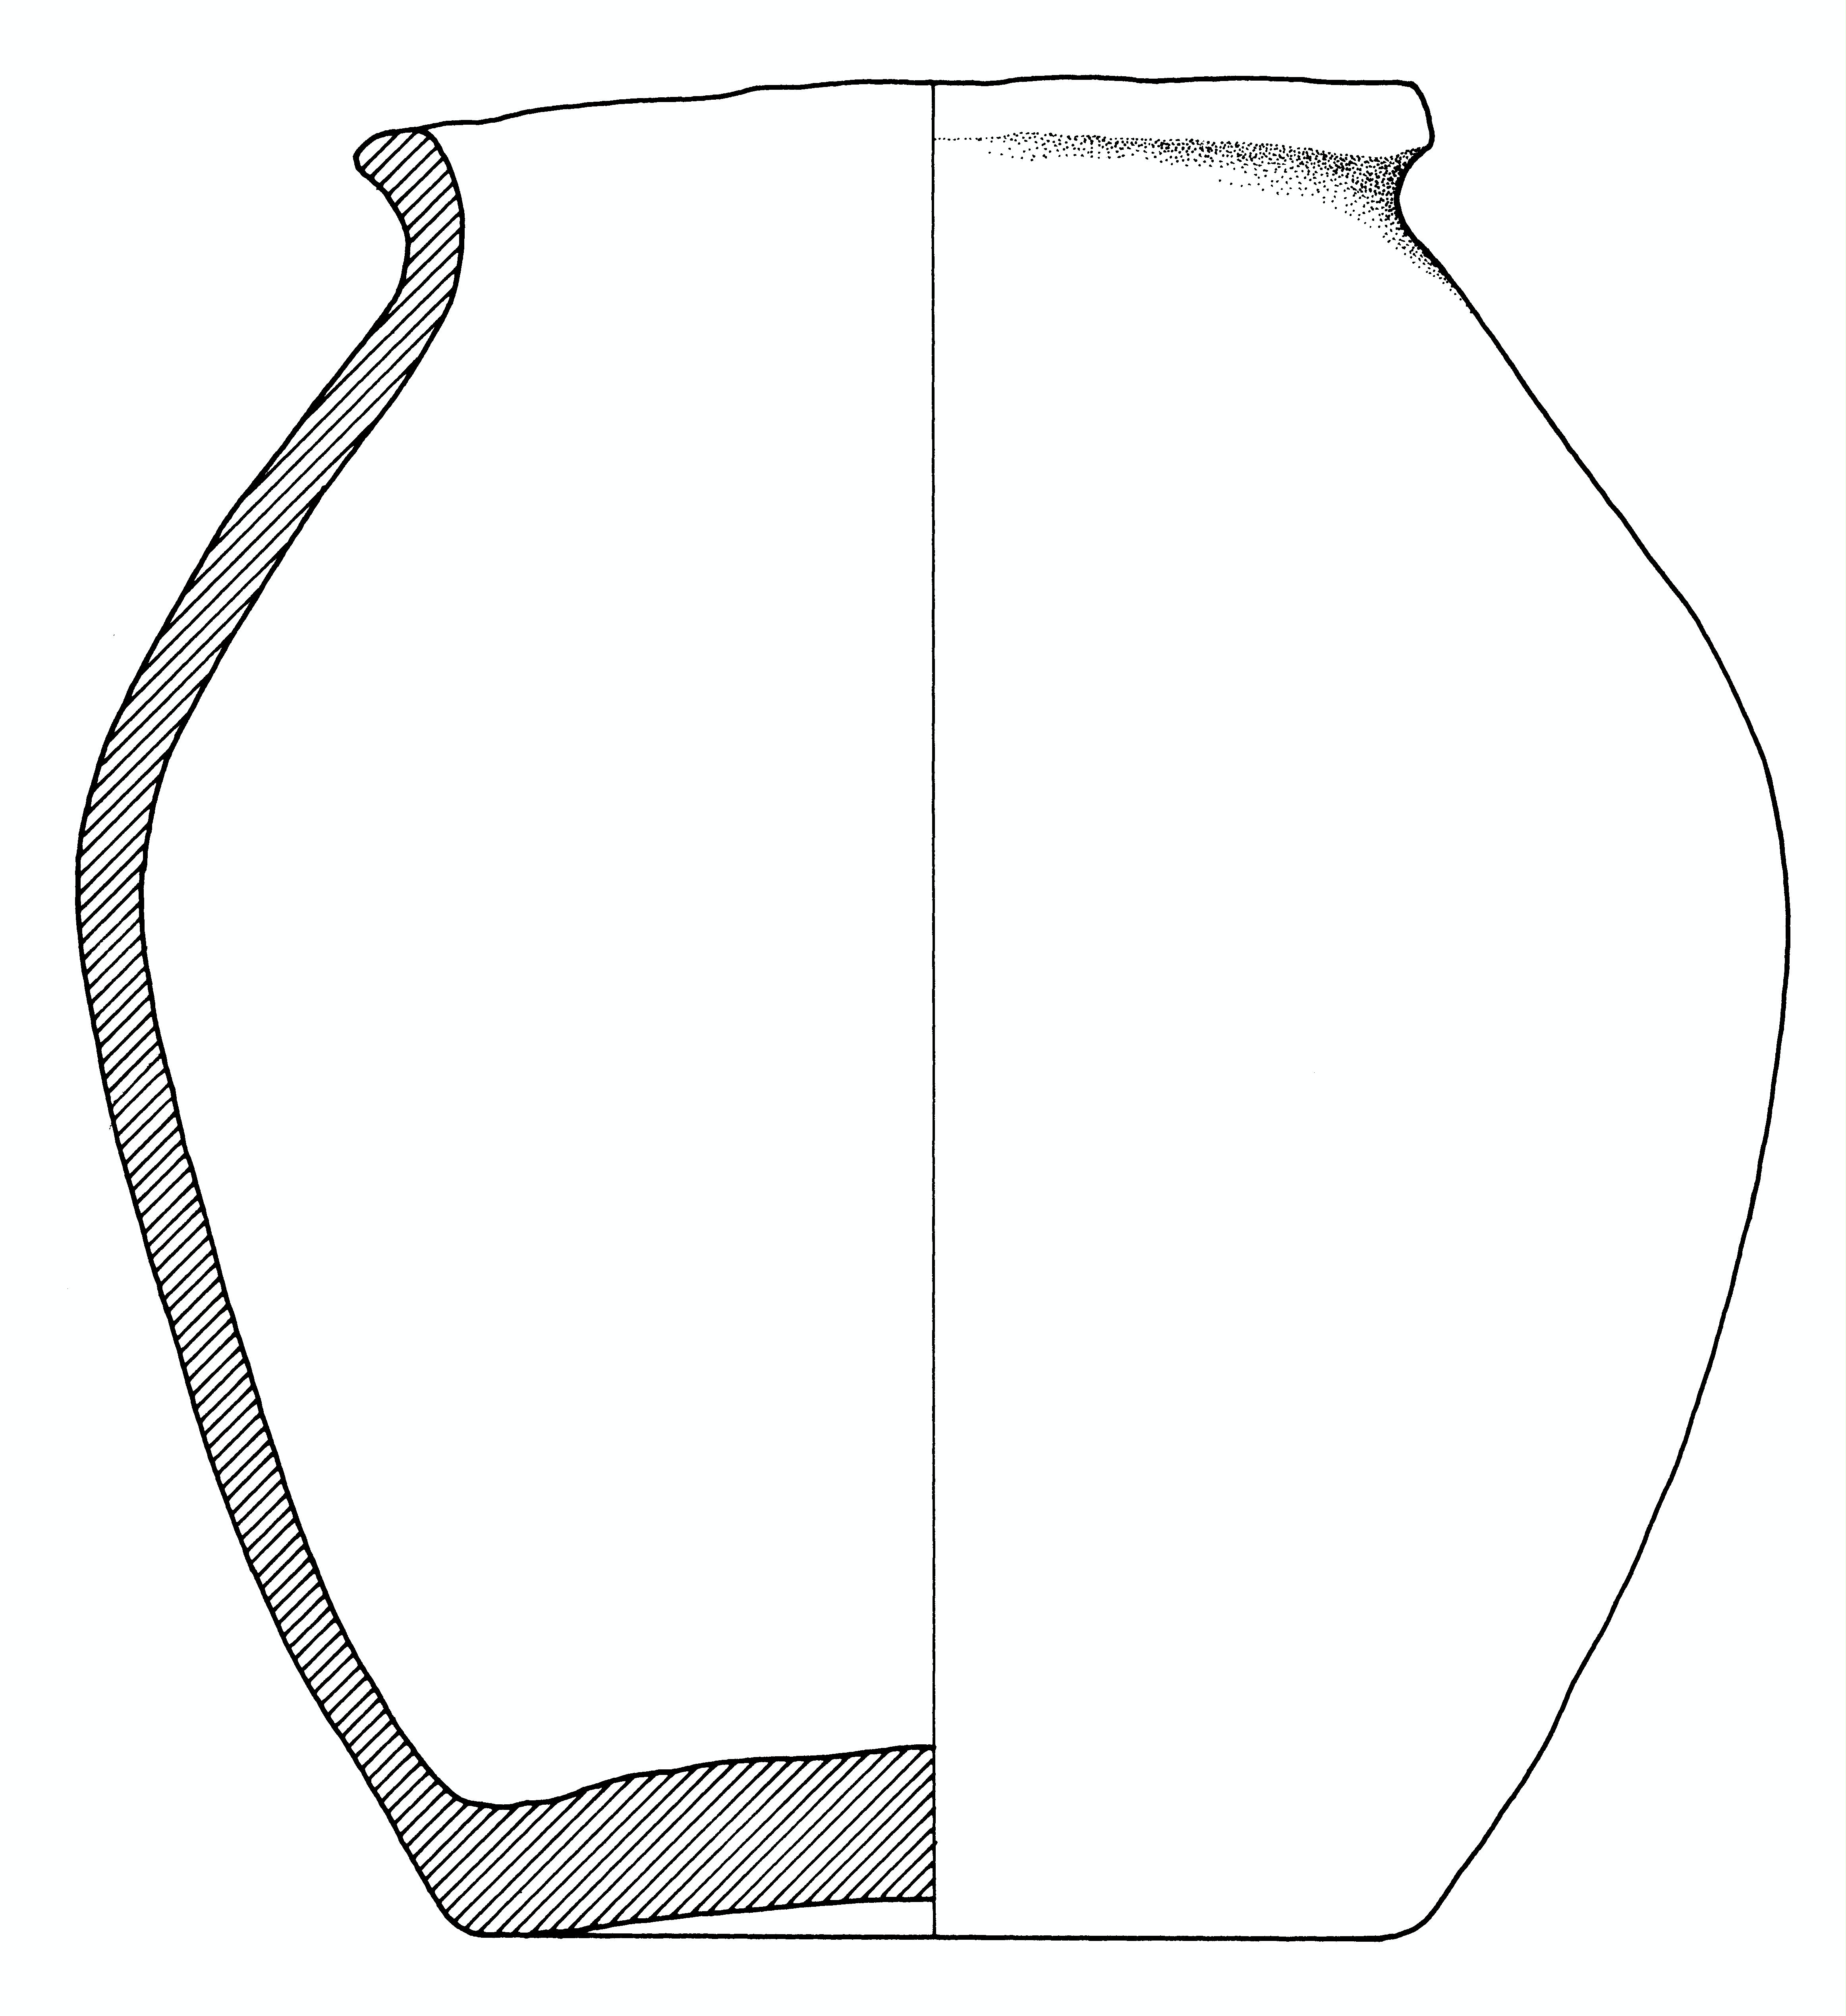 olla, cinerario (fine/primo quarto IV-III a.C)